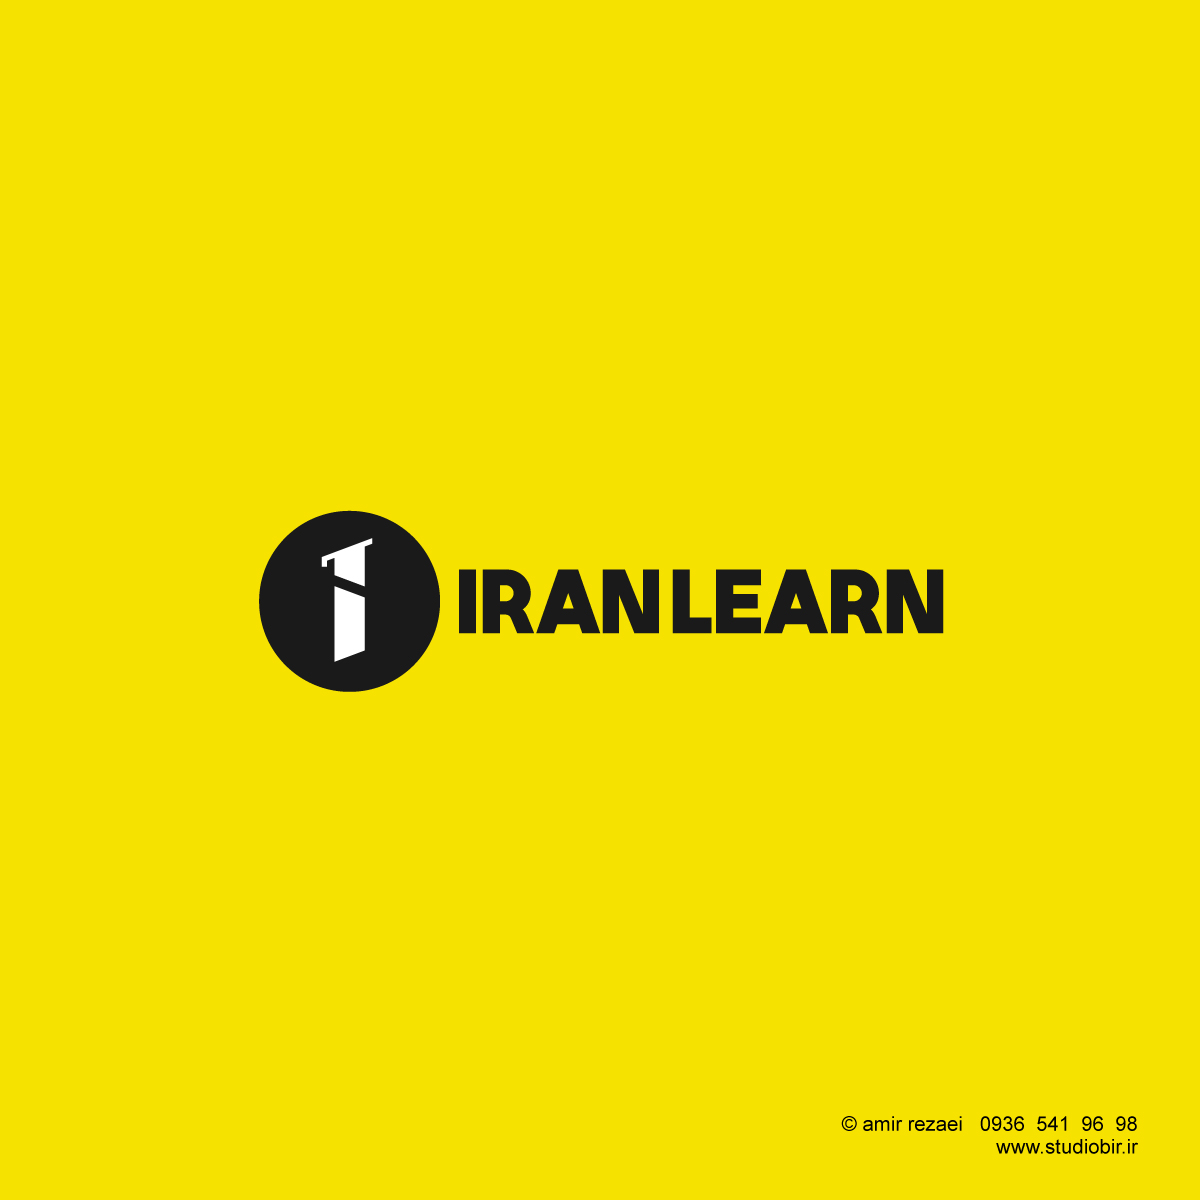 logo design for iranlearn branding creative design education learn logo logo design logos online learning sign university